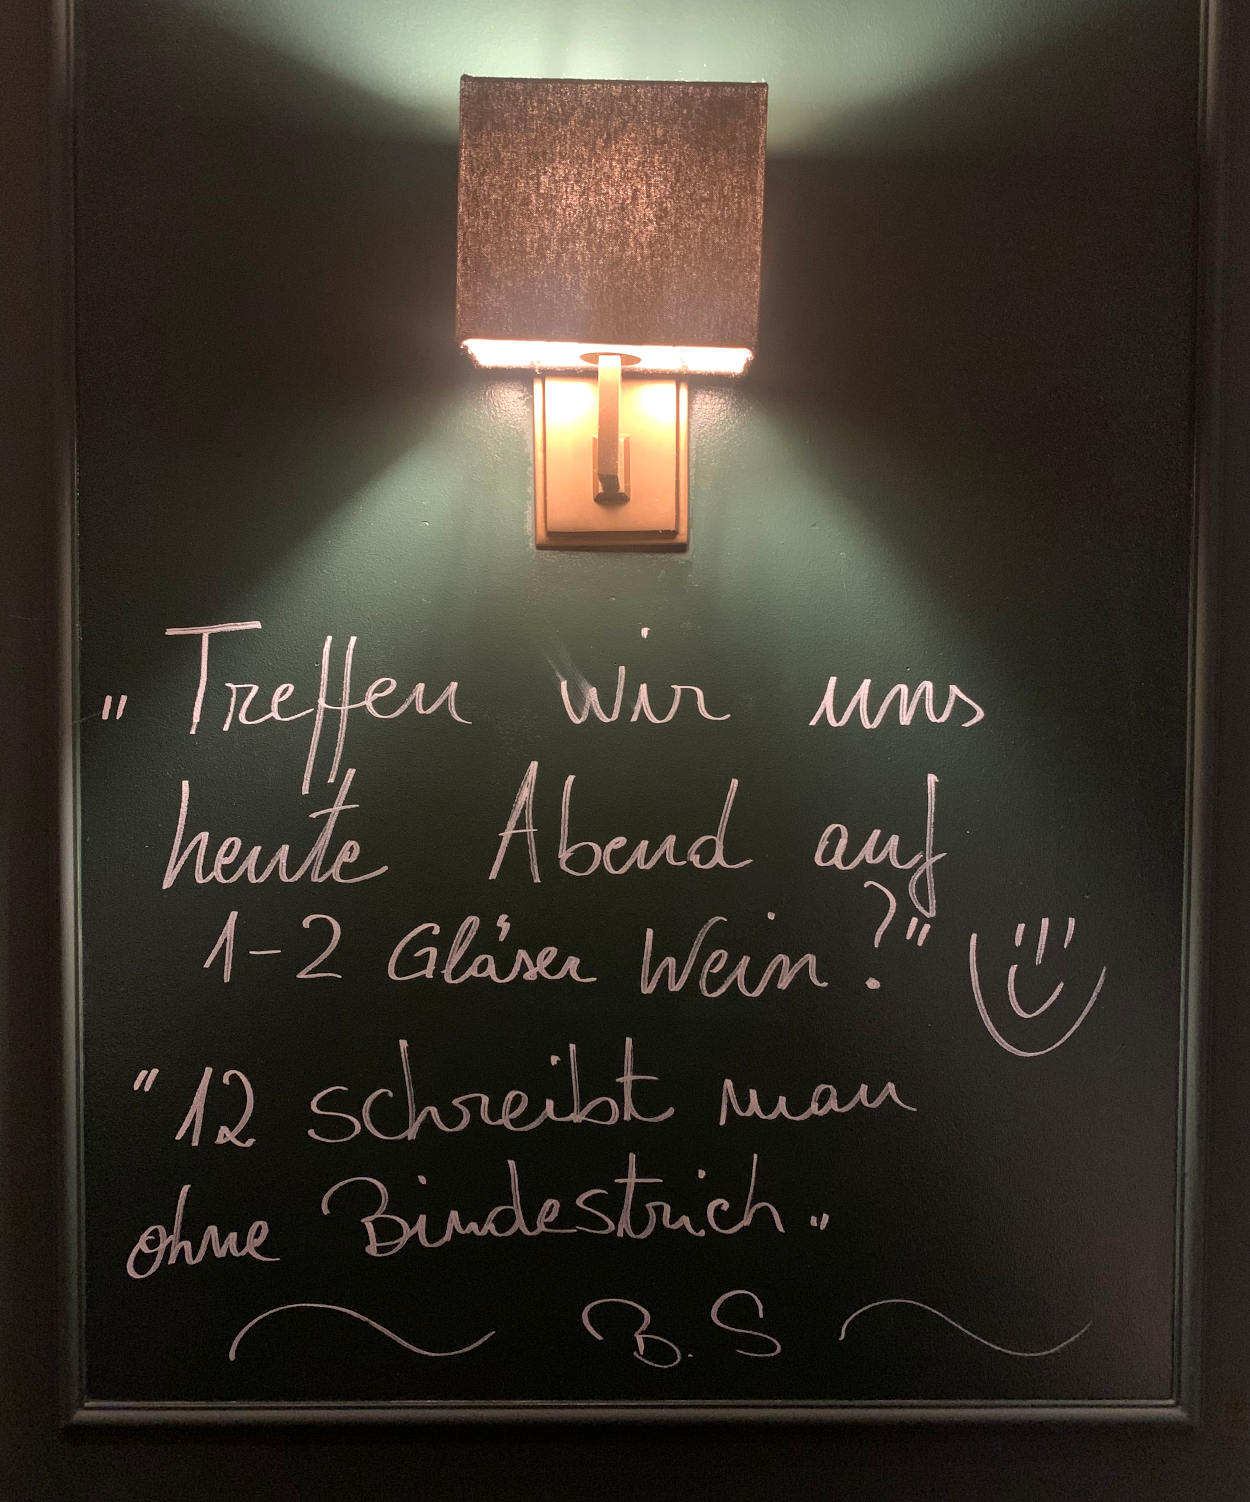 Tafel im Restaurant, Text: "Treffen wir uns heute abend auf 1 - 2 Gläser Wein?" - "12 schreibt man ohne BIndestrich."